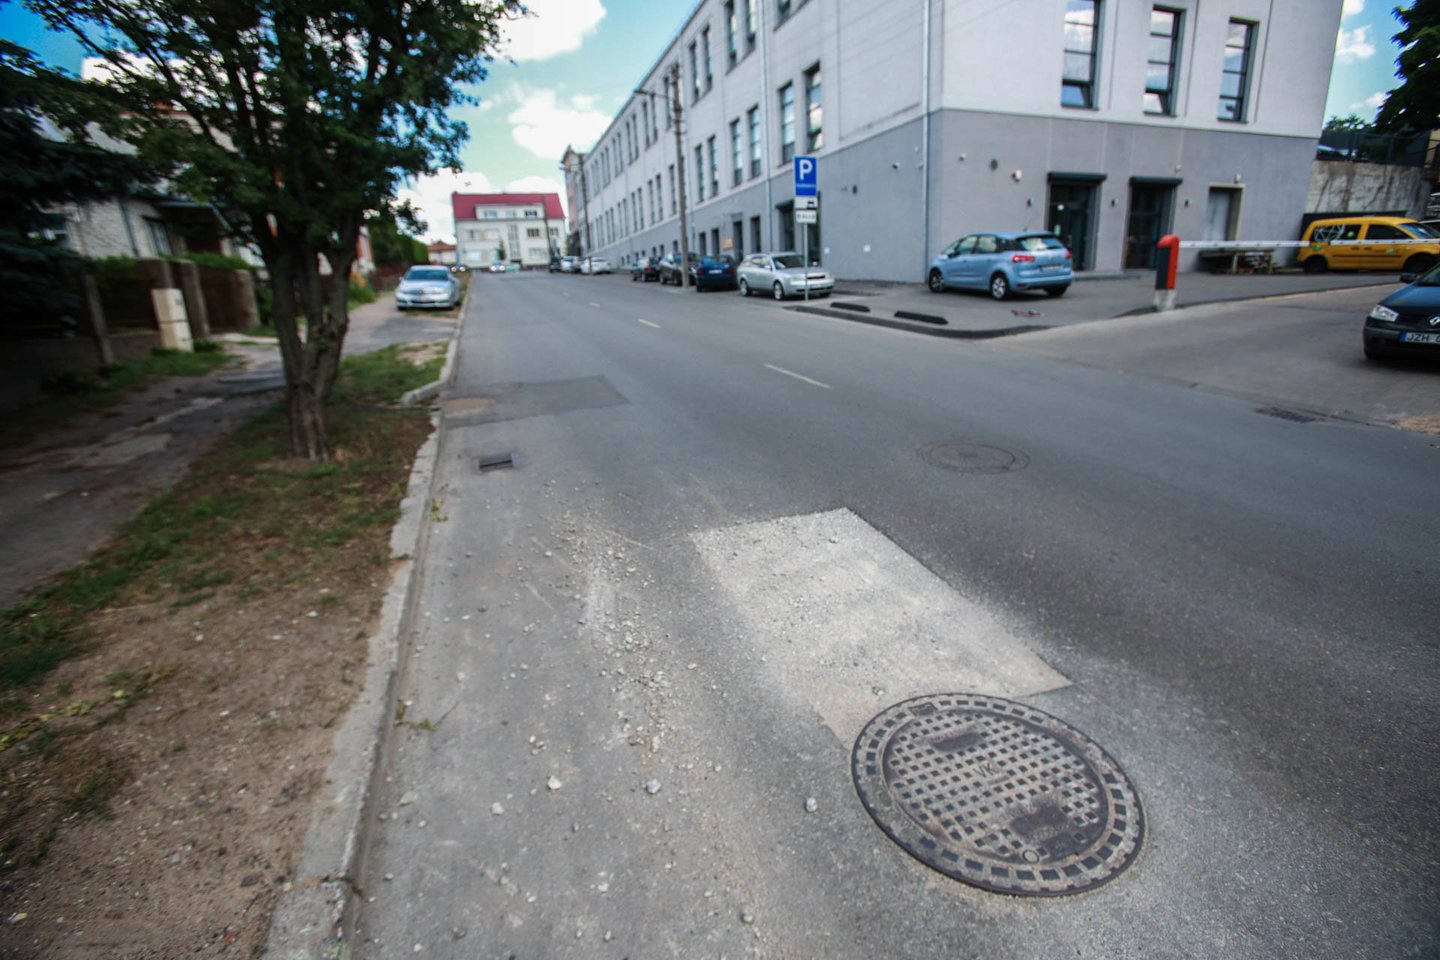  Naujai sutvarkytose gatvėse, kuriomis taip didžiavosi Kauno valdžia, po lietaus viena po kitos ėmė rastis didžiulės duobės. <br> G. Bitvinsko nuotr.